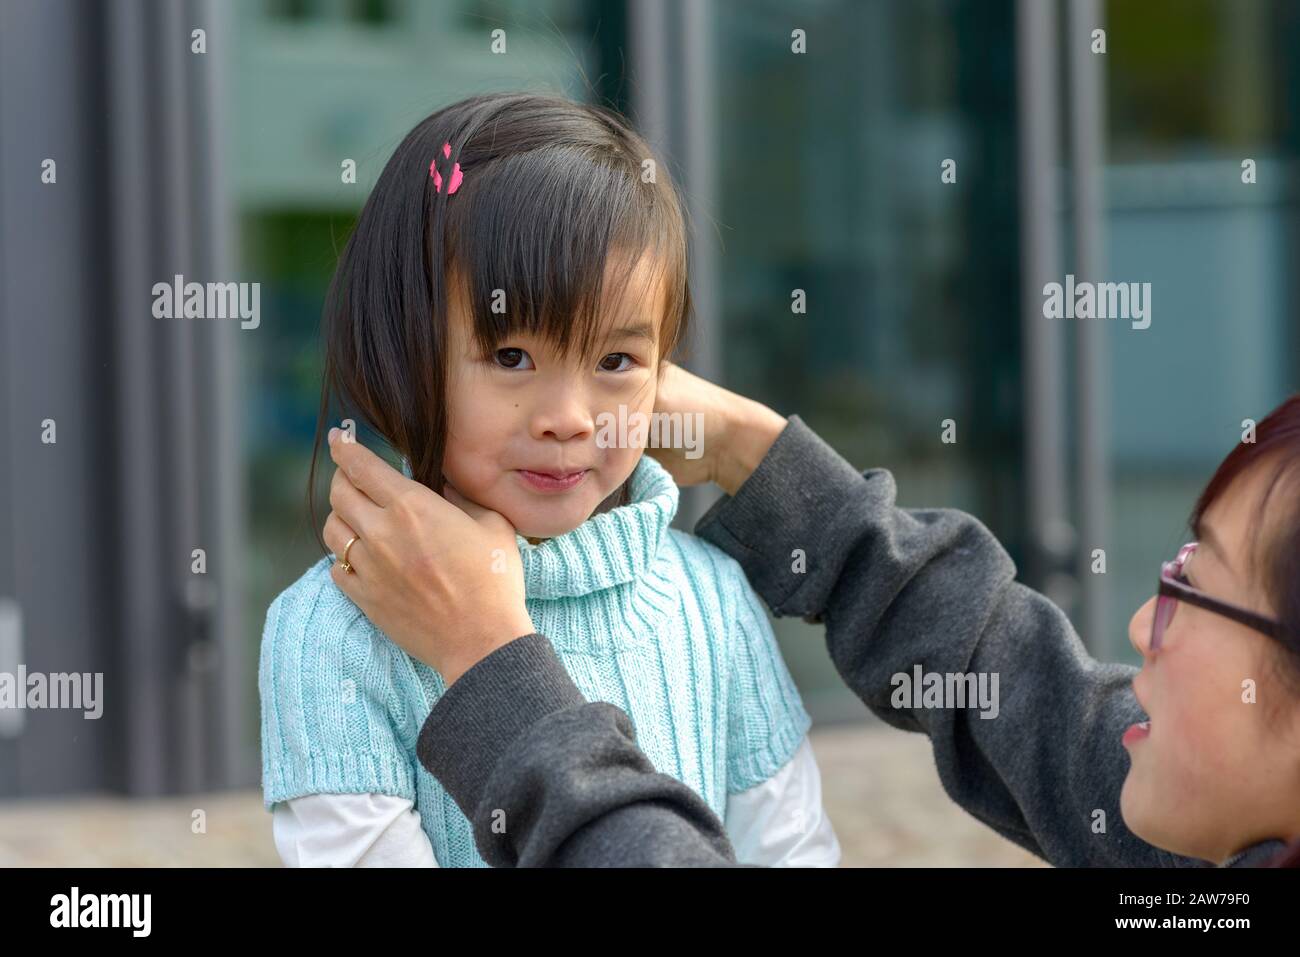 Giovane madre asiatica che regola i capelli delle sue figlie intorno ad un maglione dolcevita mentre sorride prettily alla macchina fotografica Foto Stock